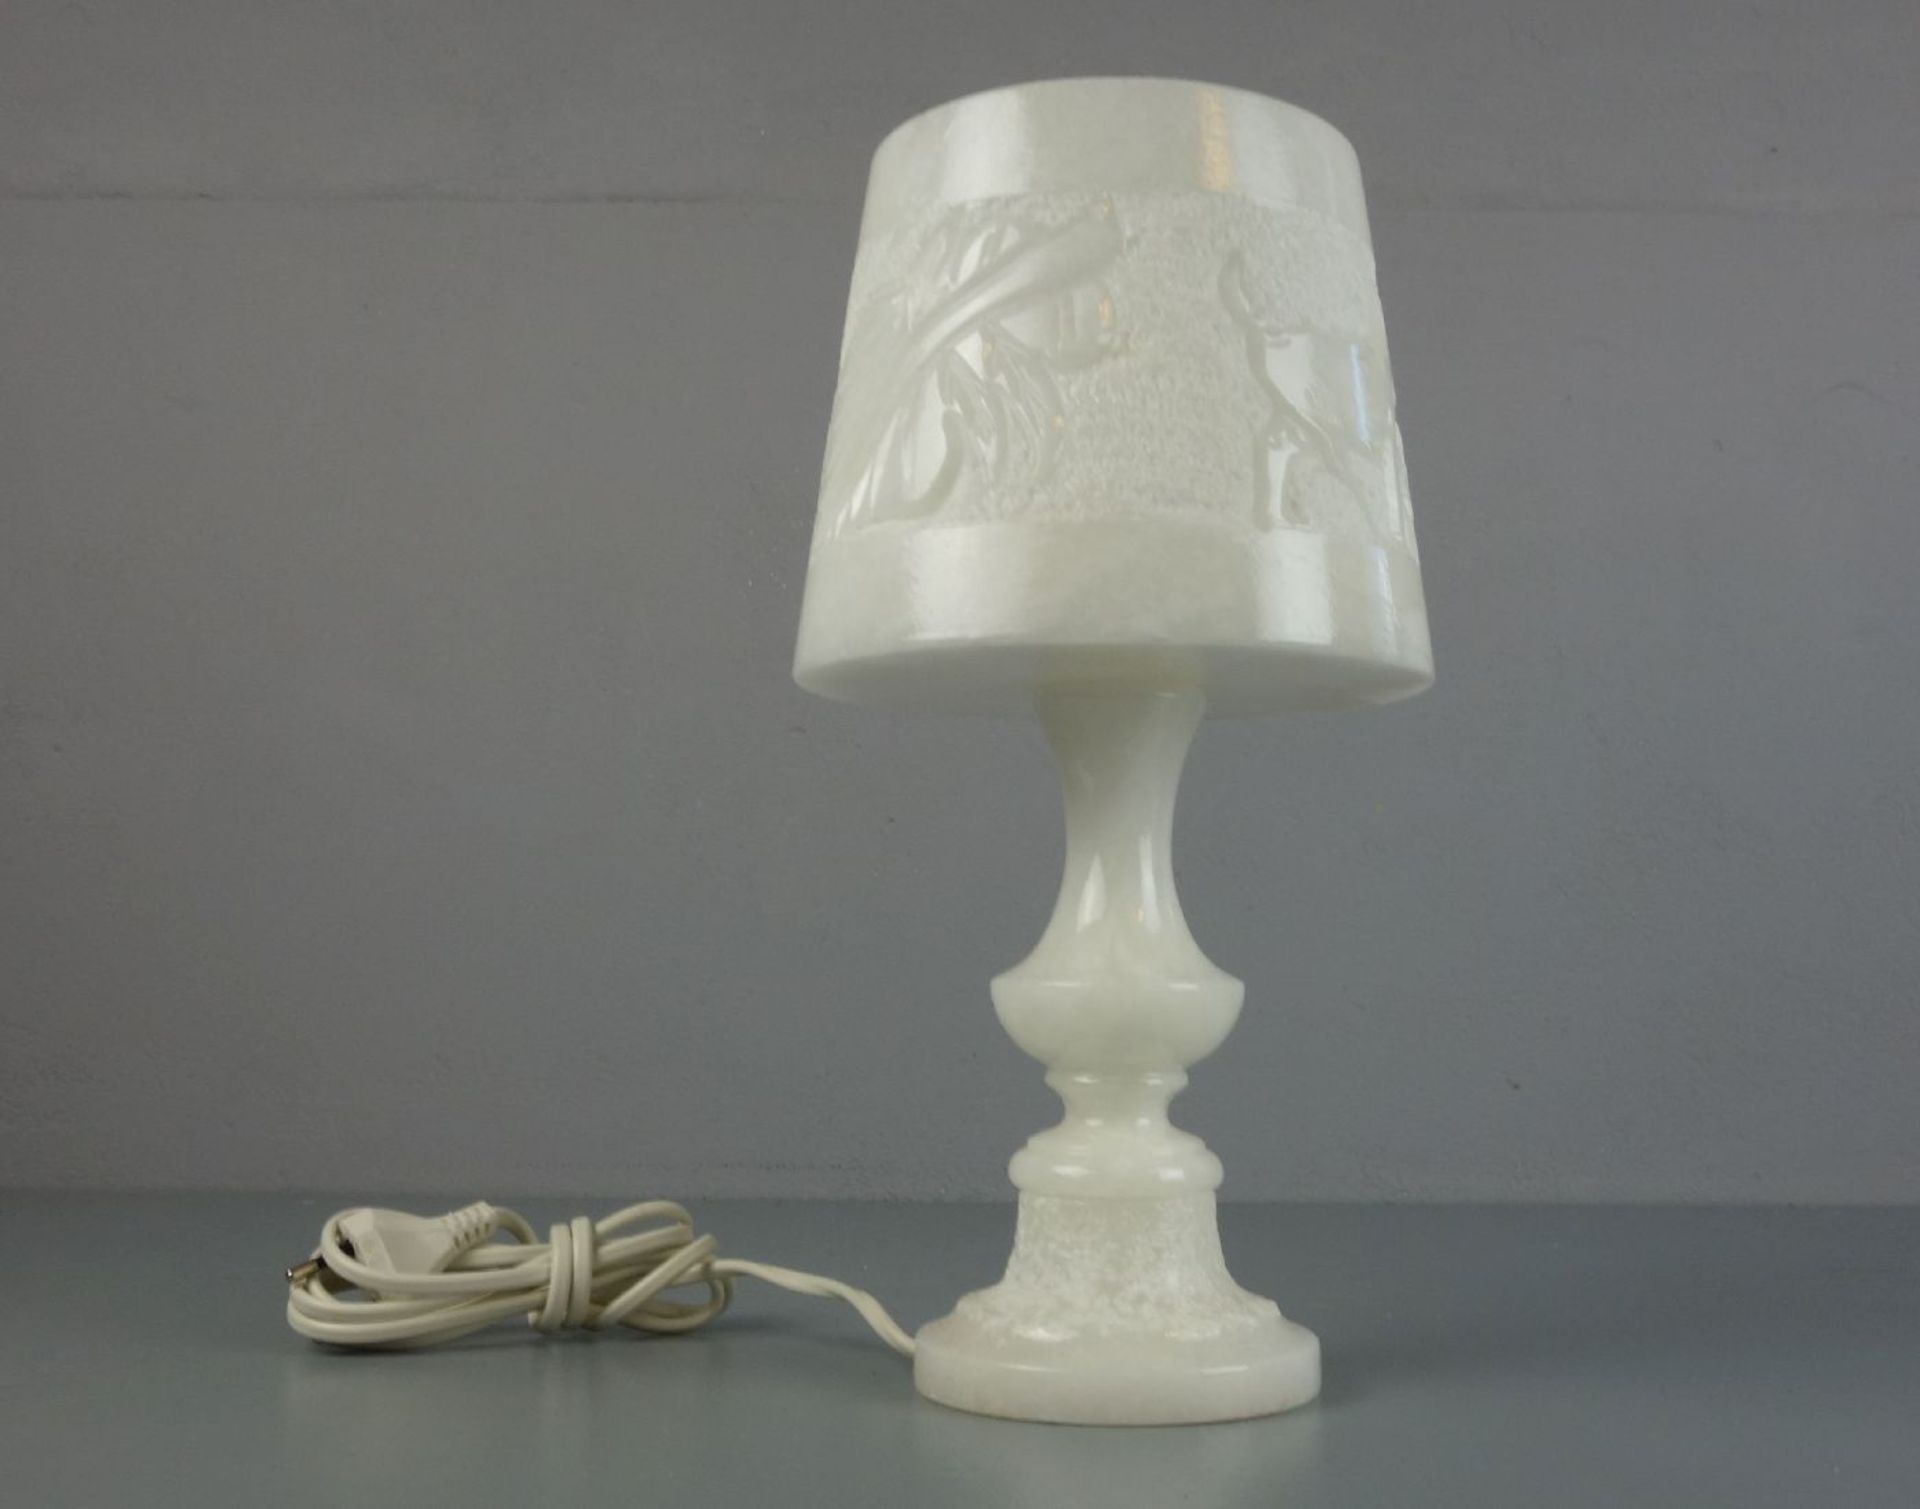 ALABASTER - LAMPE / TISCHLAMPE / lamp, Alabaster mit ungeglätteten und polierten Partien und - Image 4 of 4